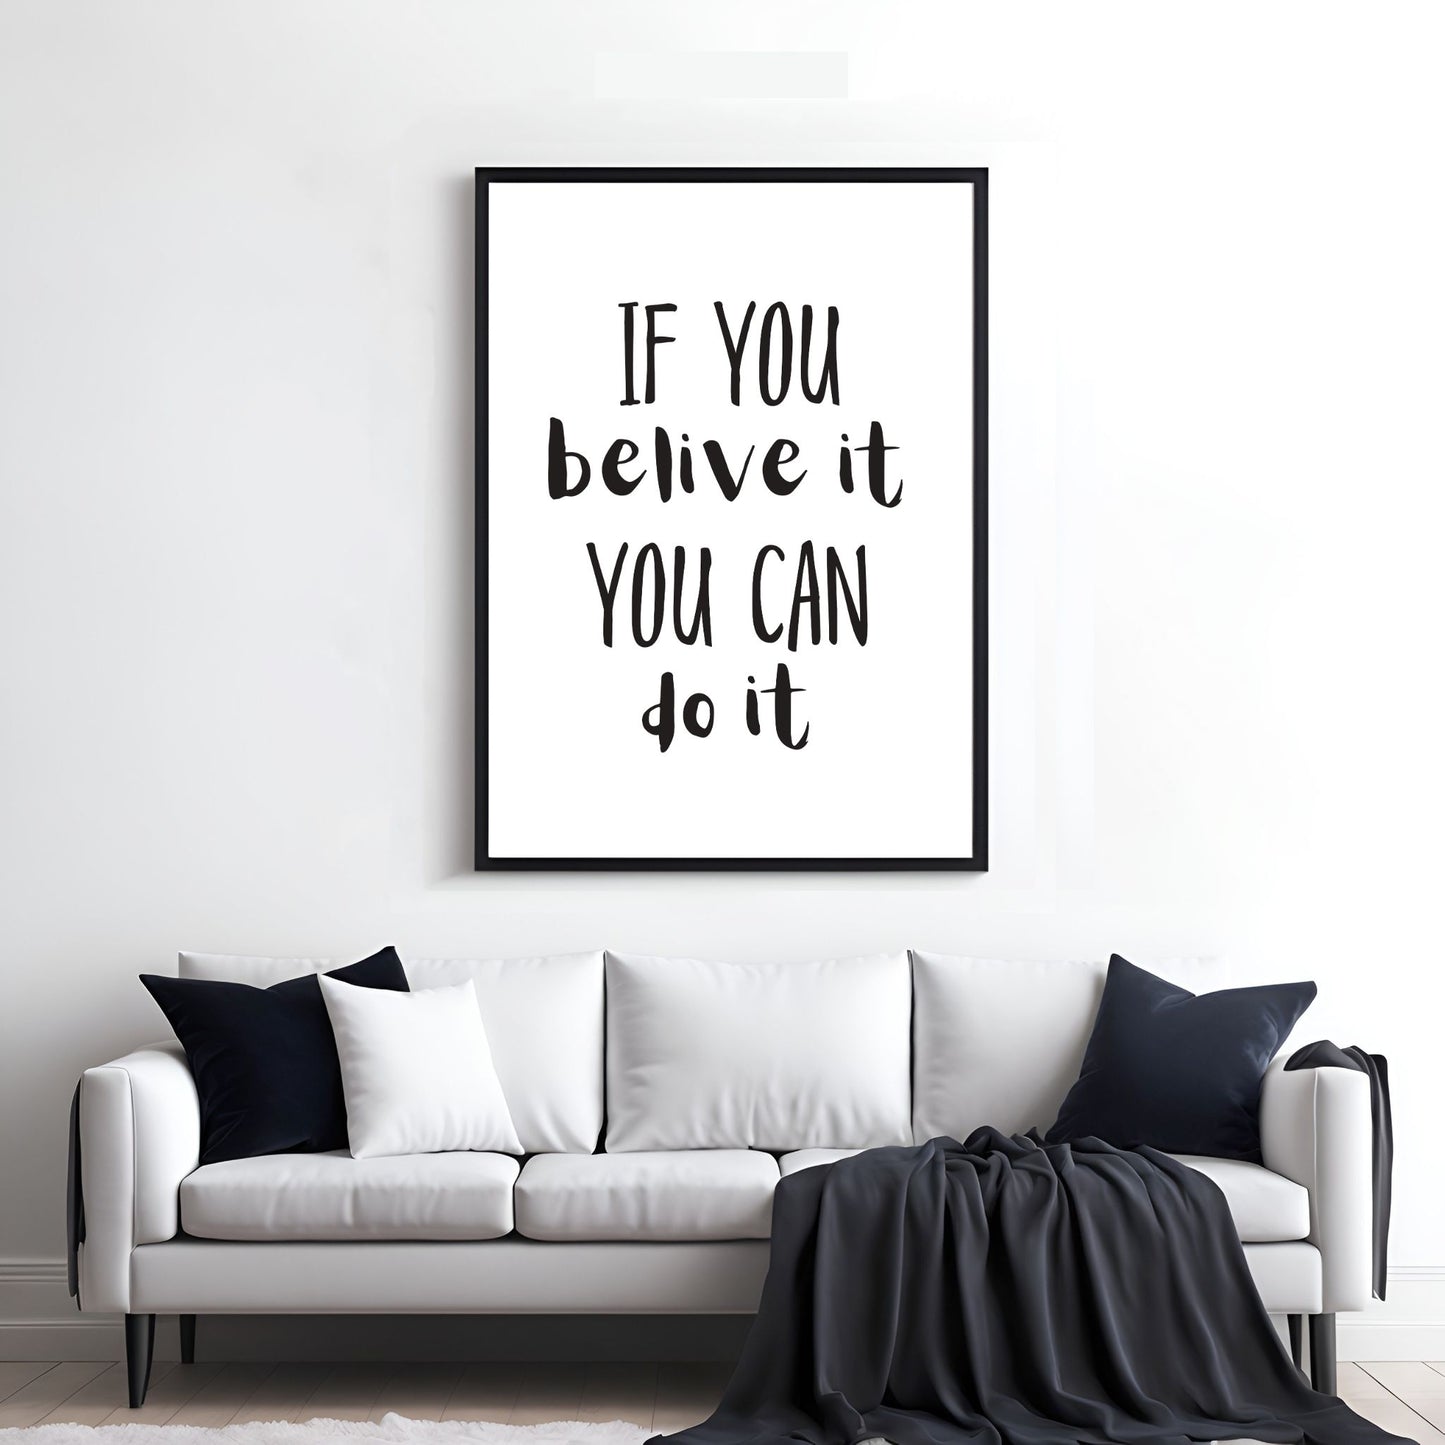 Grafisk tekstplakat med sort skrift på hvit bakgrunn og tekst "If you belive it, you can do it". Illustrasjon viser plakat i sort ramme på en vegg over en sofa.